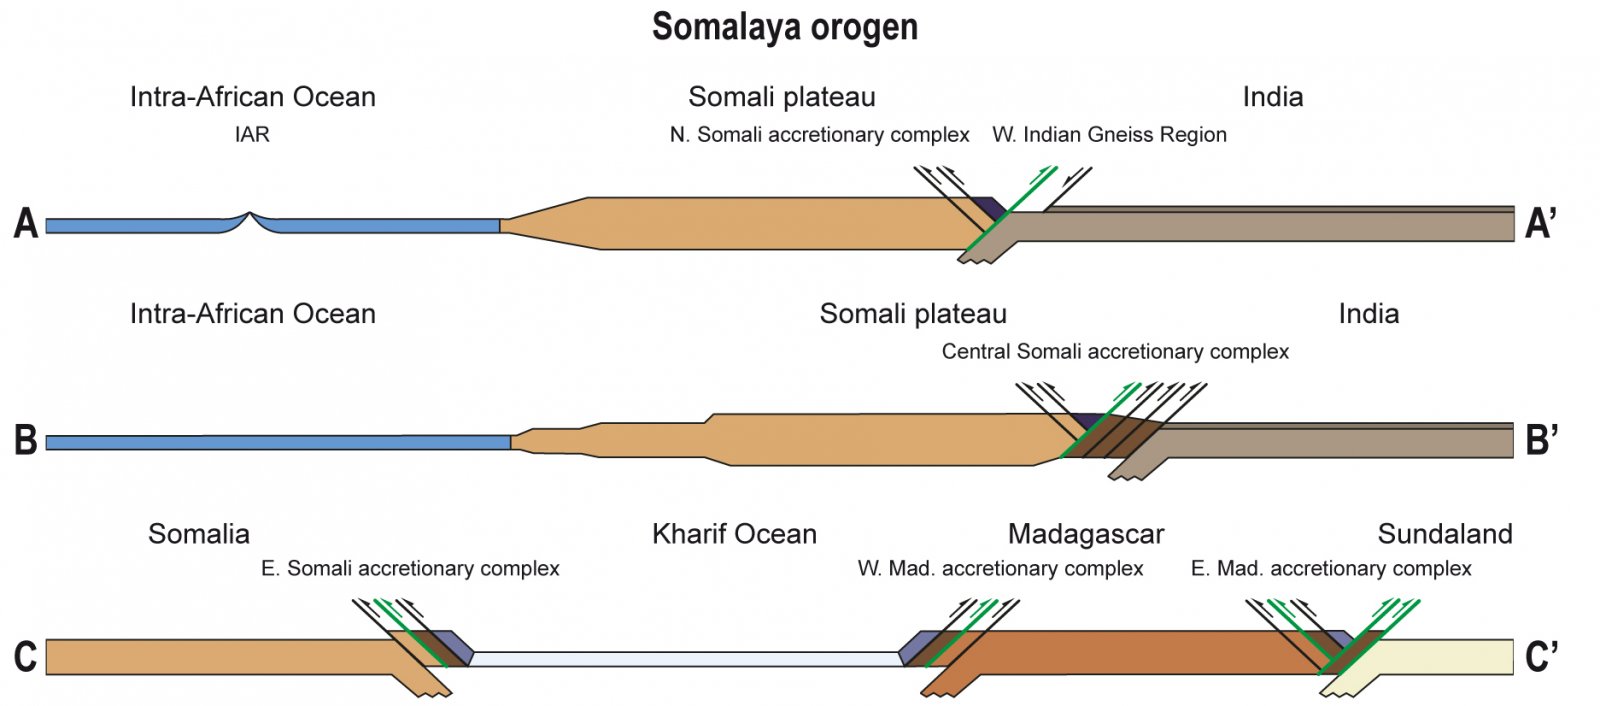 Dwarsdoorsnede Somalayagebergte over 200 miljoen jaar